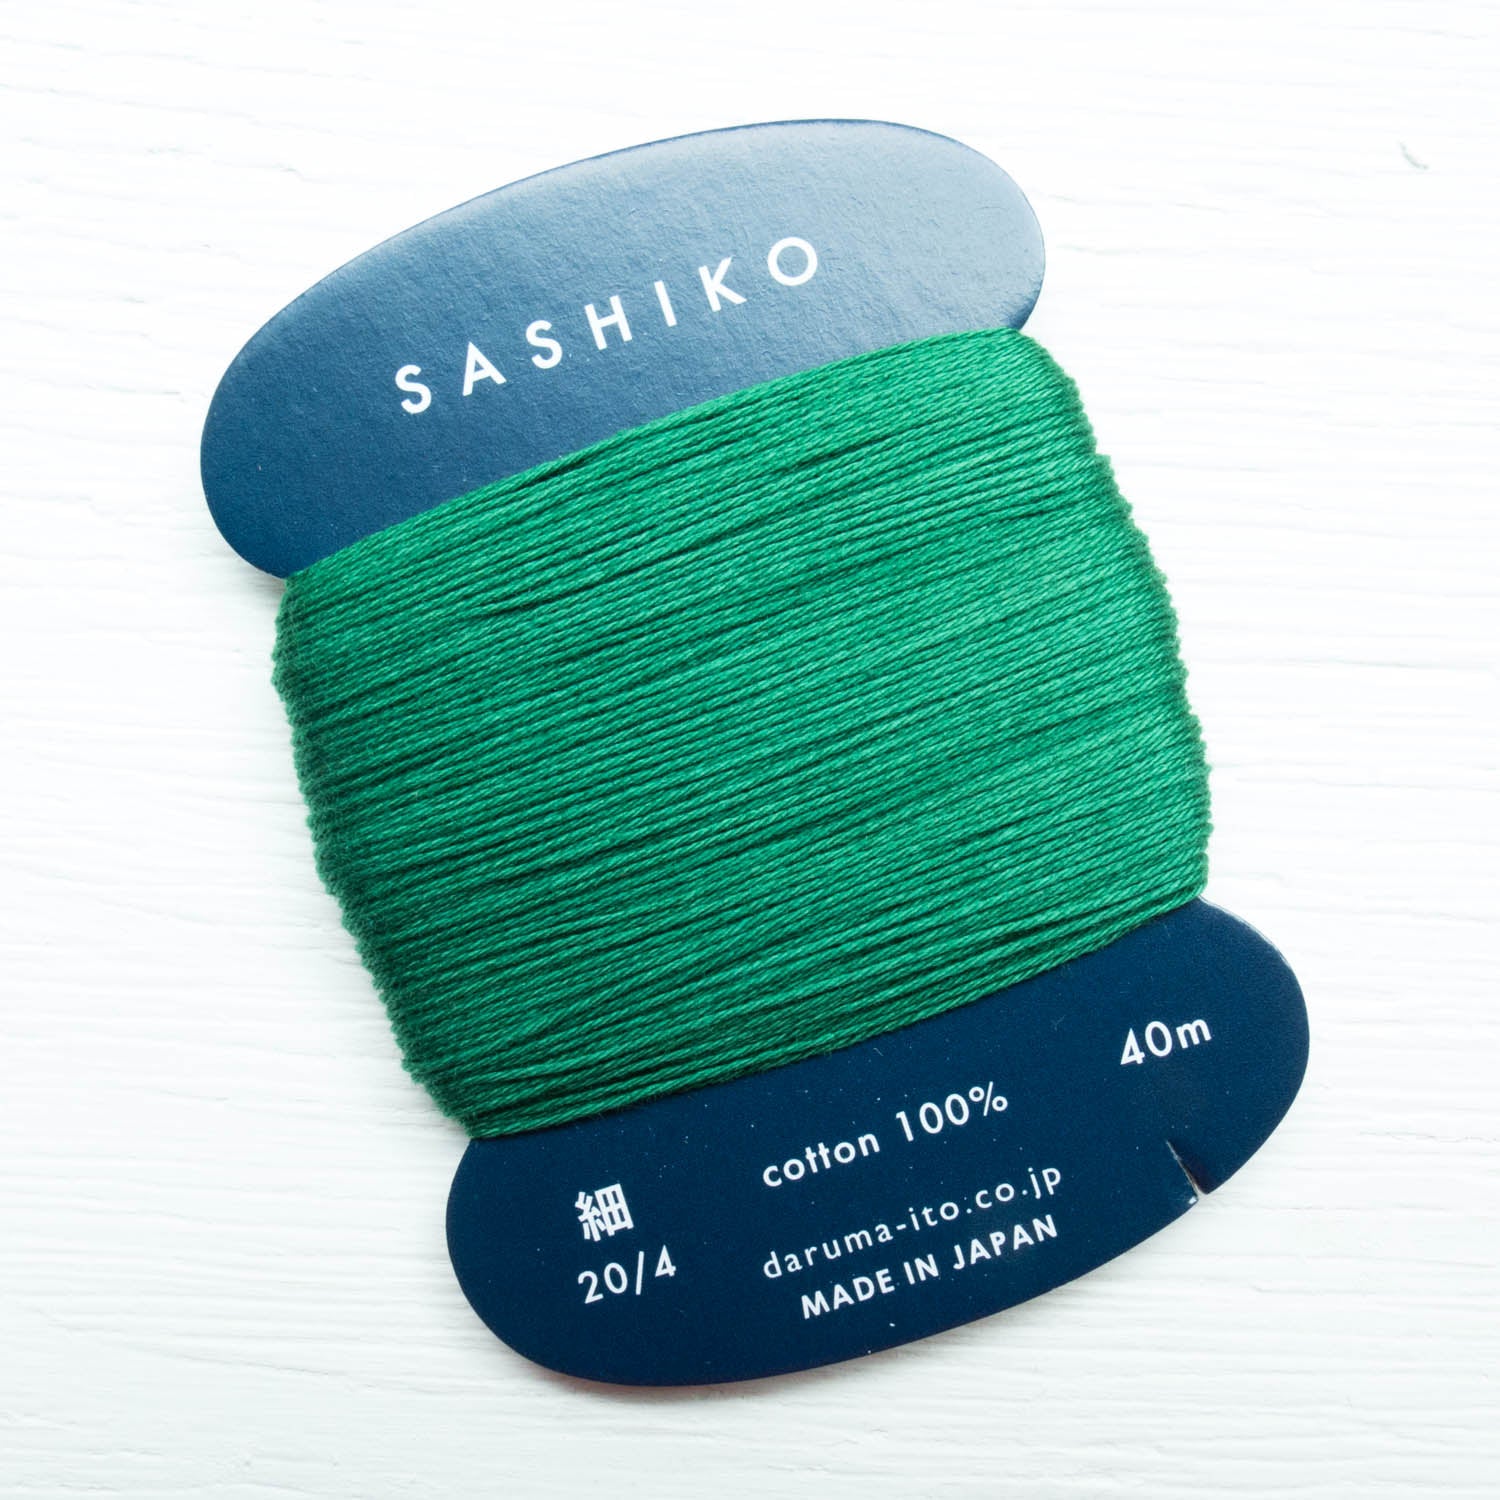 ORIM - Daruma - Sashiko Cotton Thread 20/6 - 0208 - Hunter Green